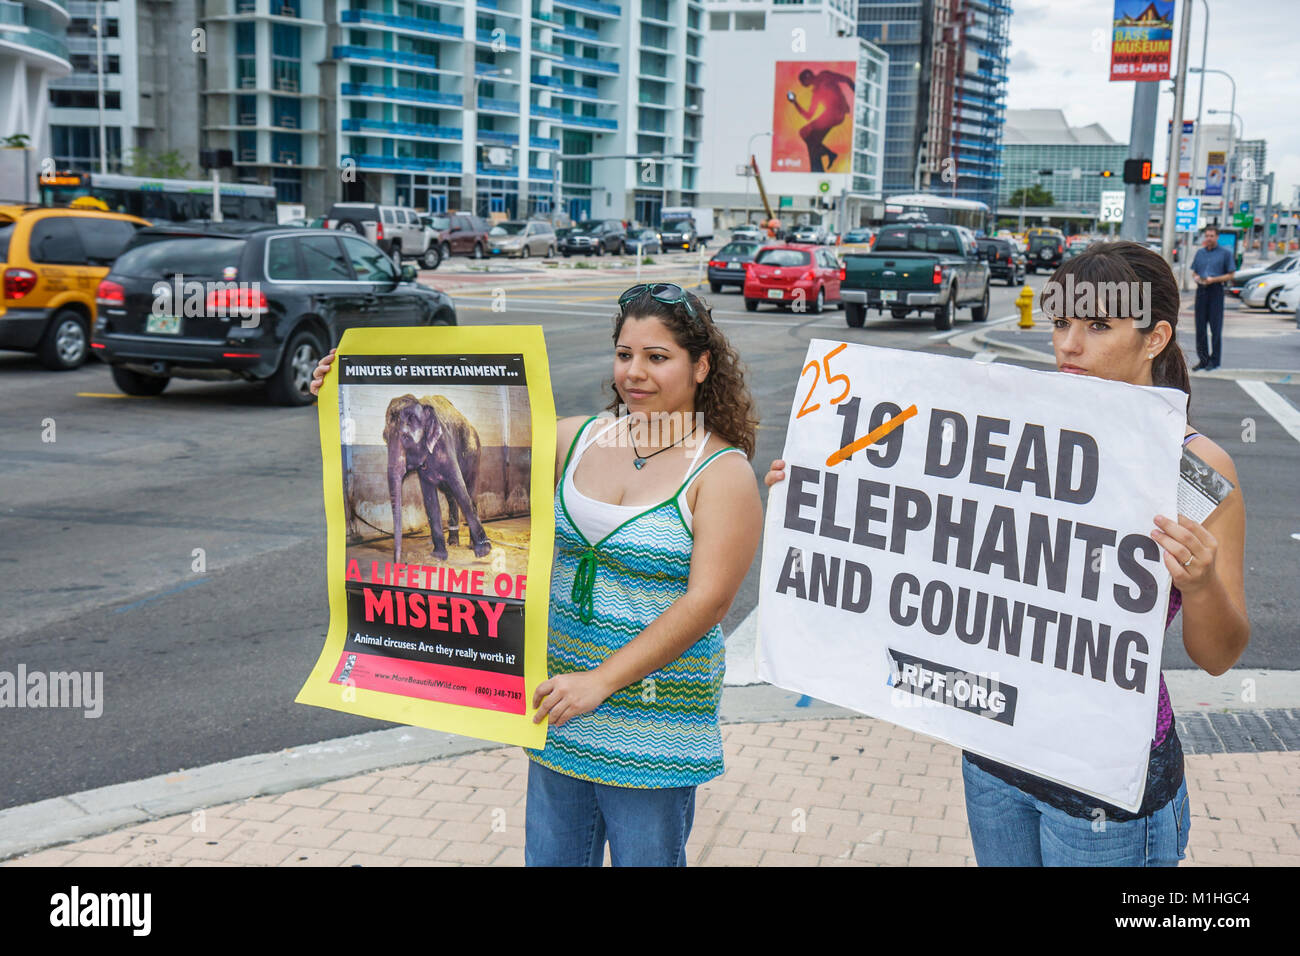 Miami Florida, Biscayne Boulevard, American Airlines Arena, protesta por abuso de elefantes, derechos de animales de circo, adolescentes adolescentes adolescentes hispanos, pos Foto de stock